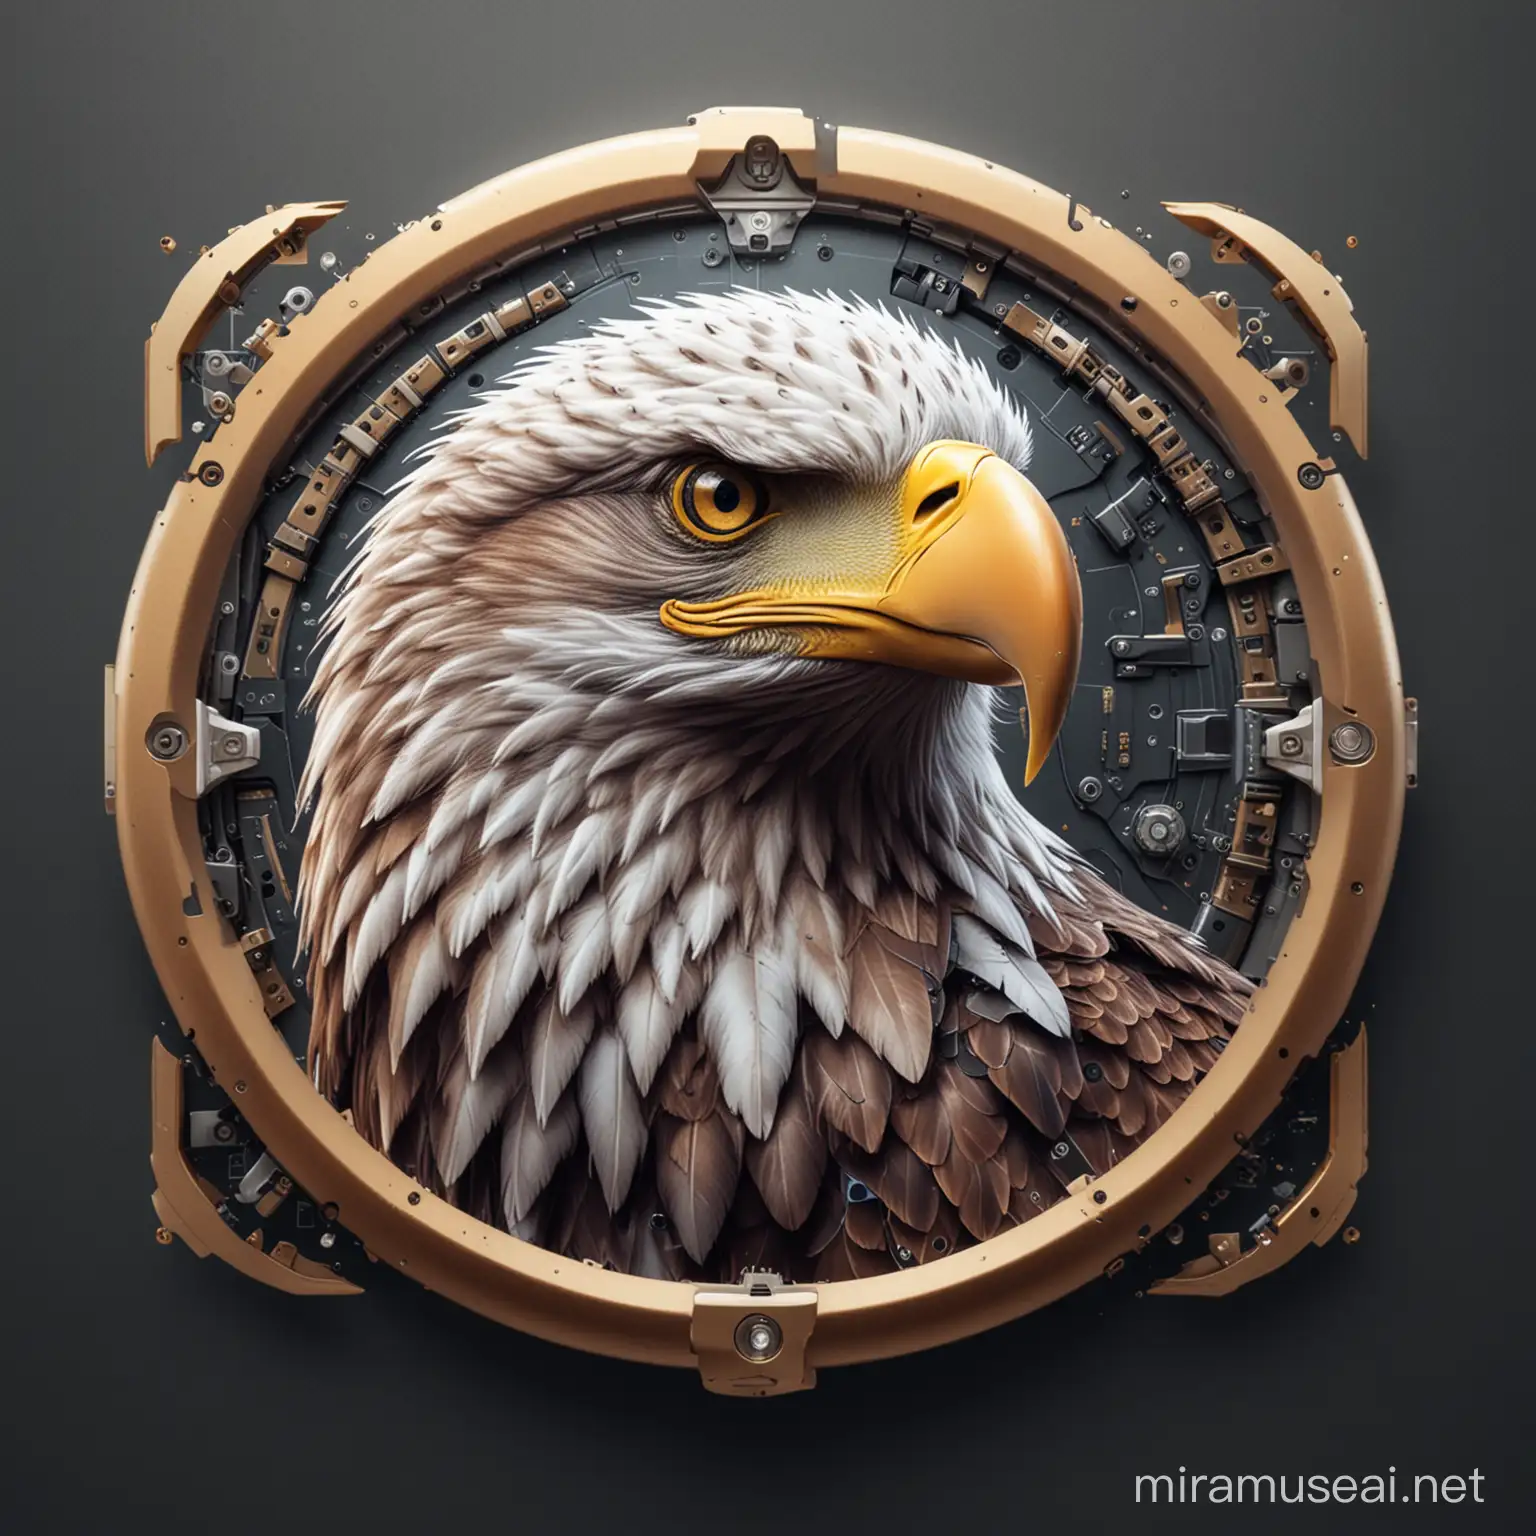 AI image generator icon with eagle
